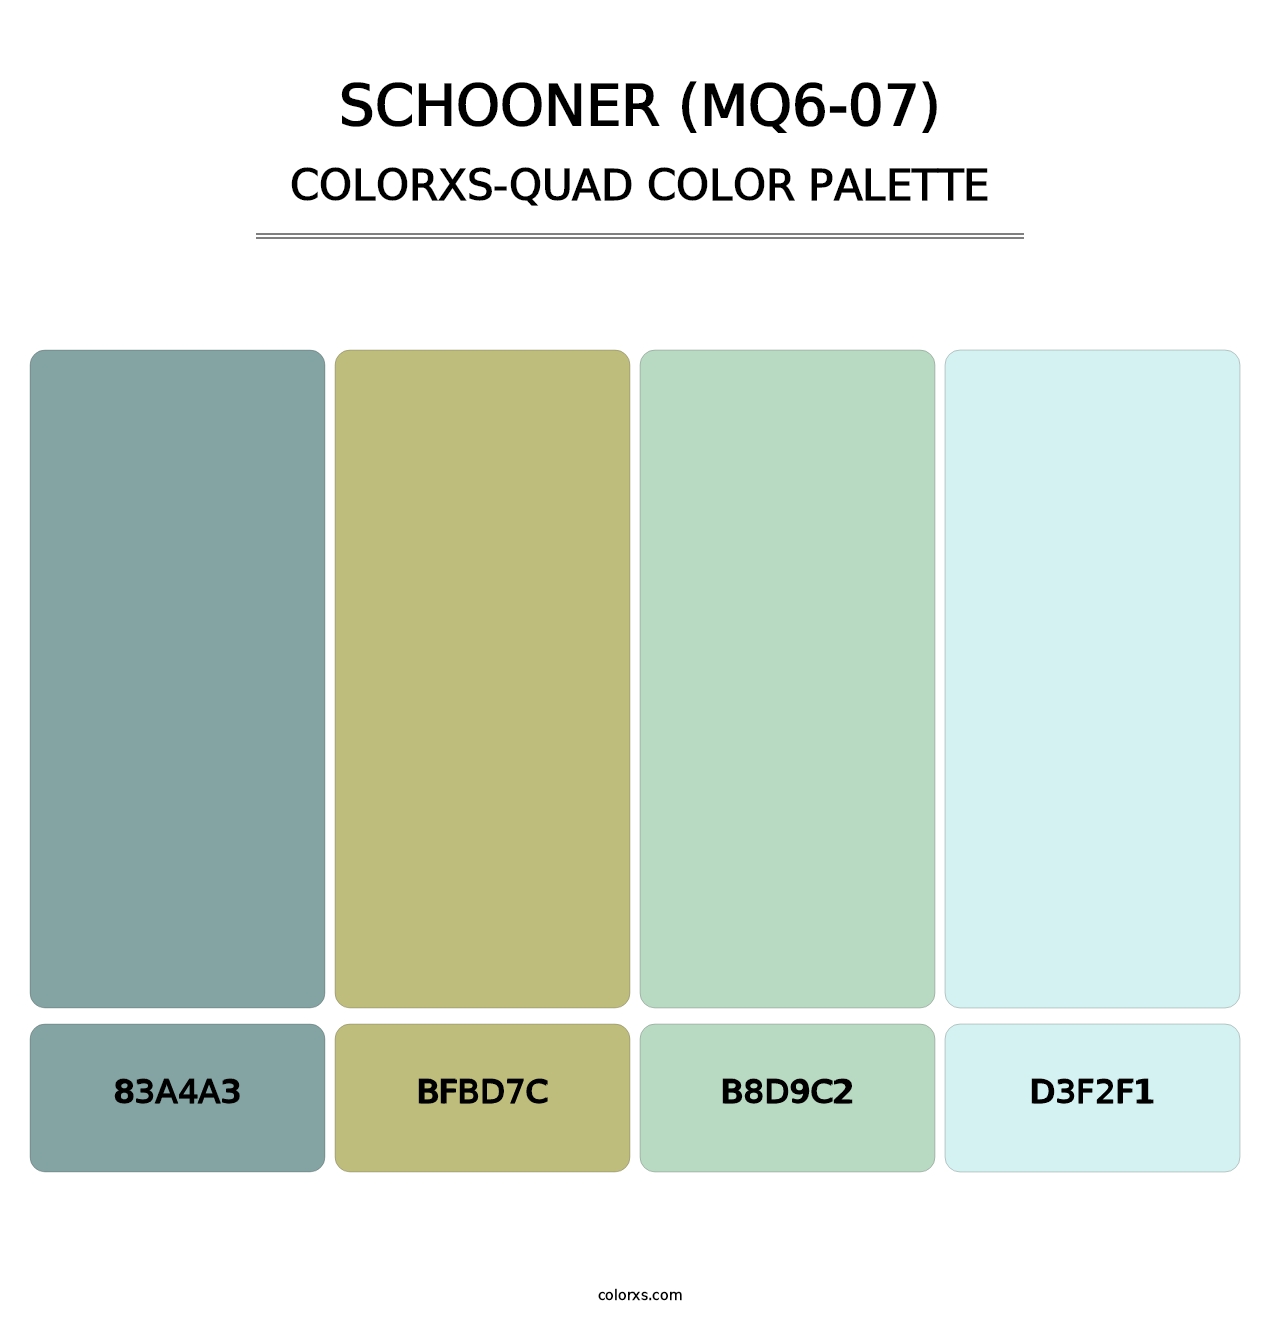 Schooner (MQ6-07) - Colorxs Quad Palette